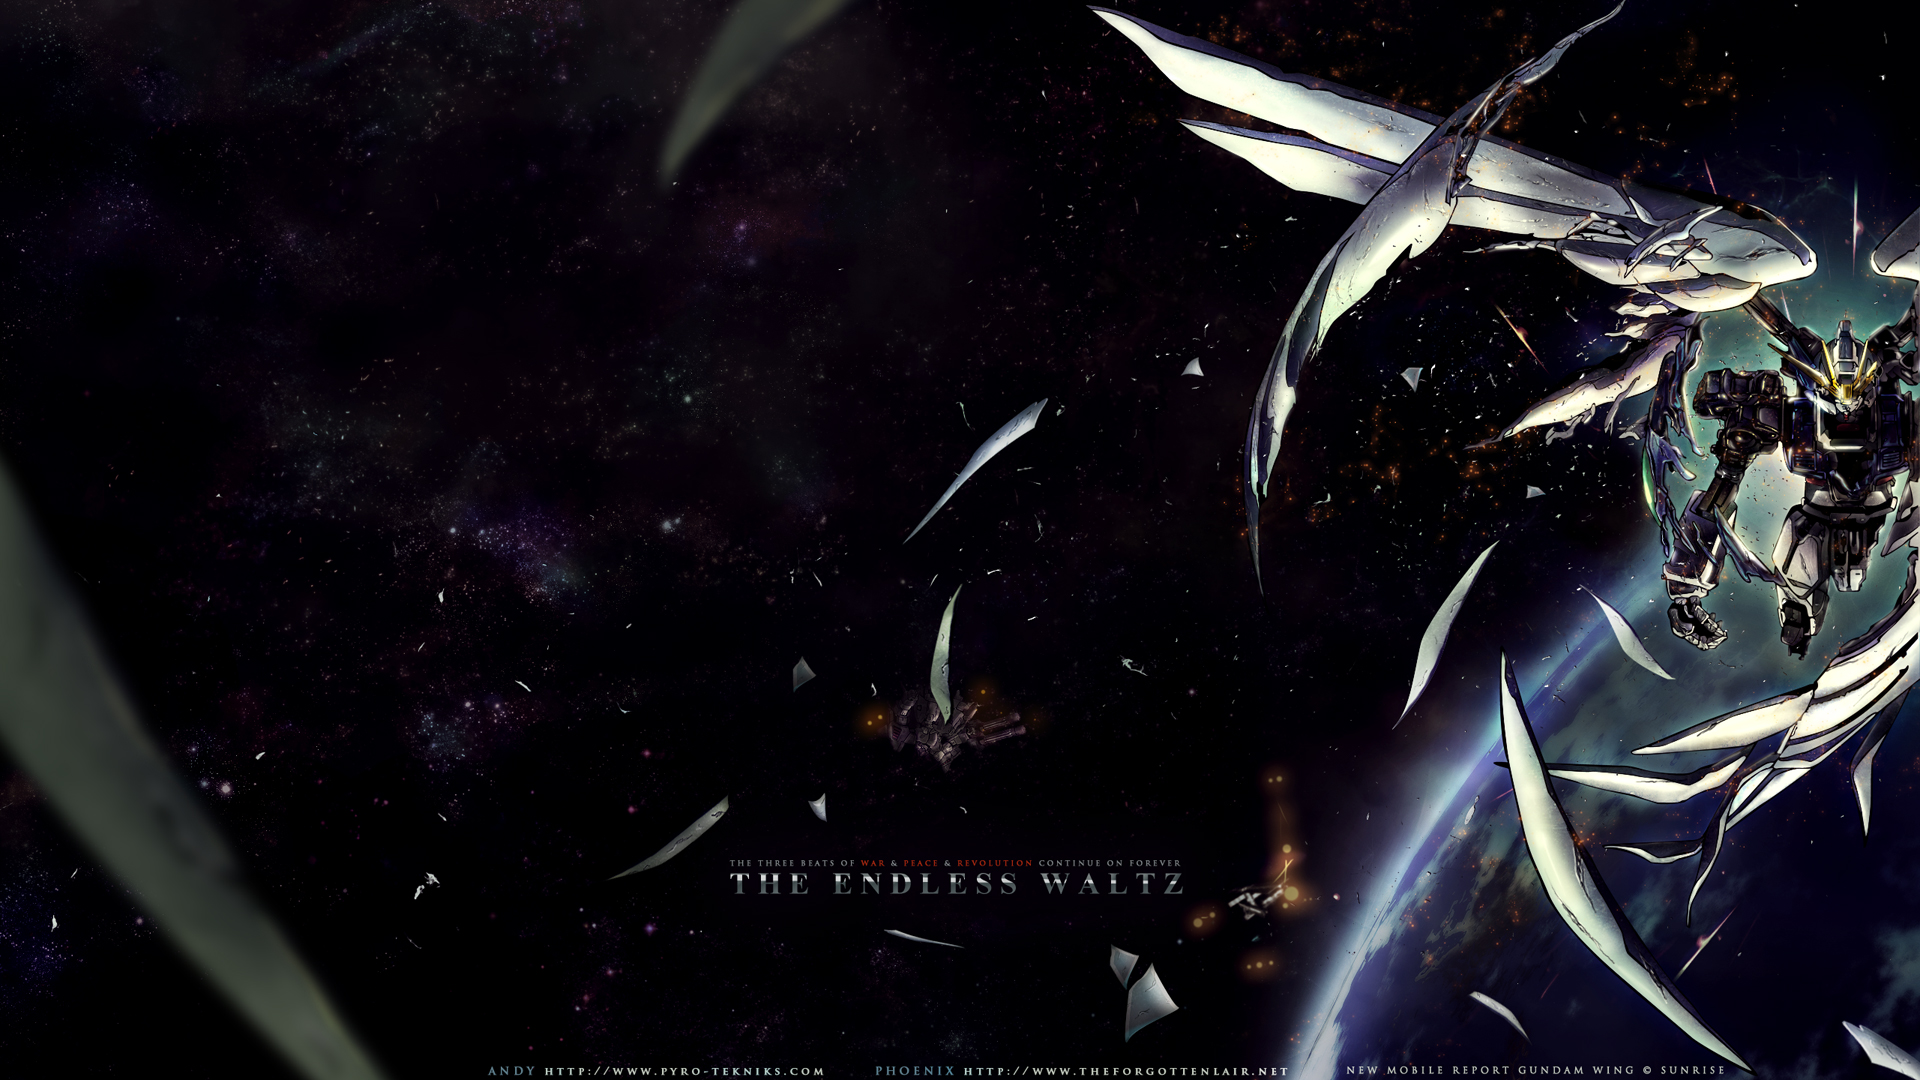 Mobile Suit Gundam 0079 Wallpaper Mobile Suit Gundam Wallpaper